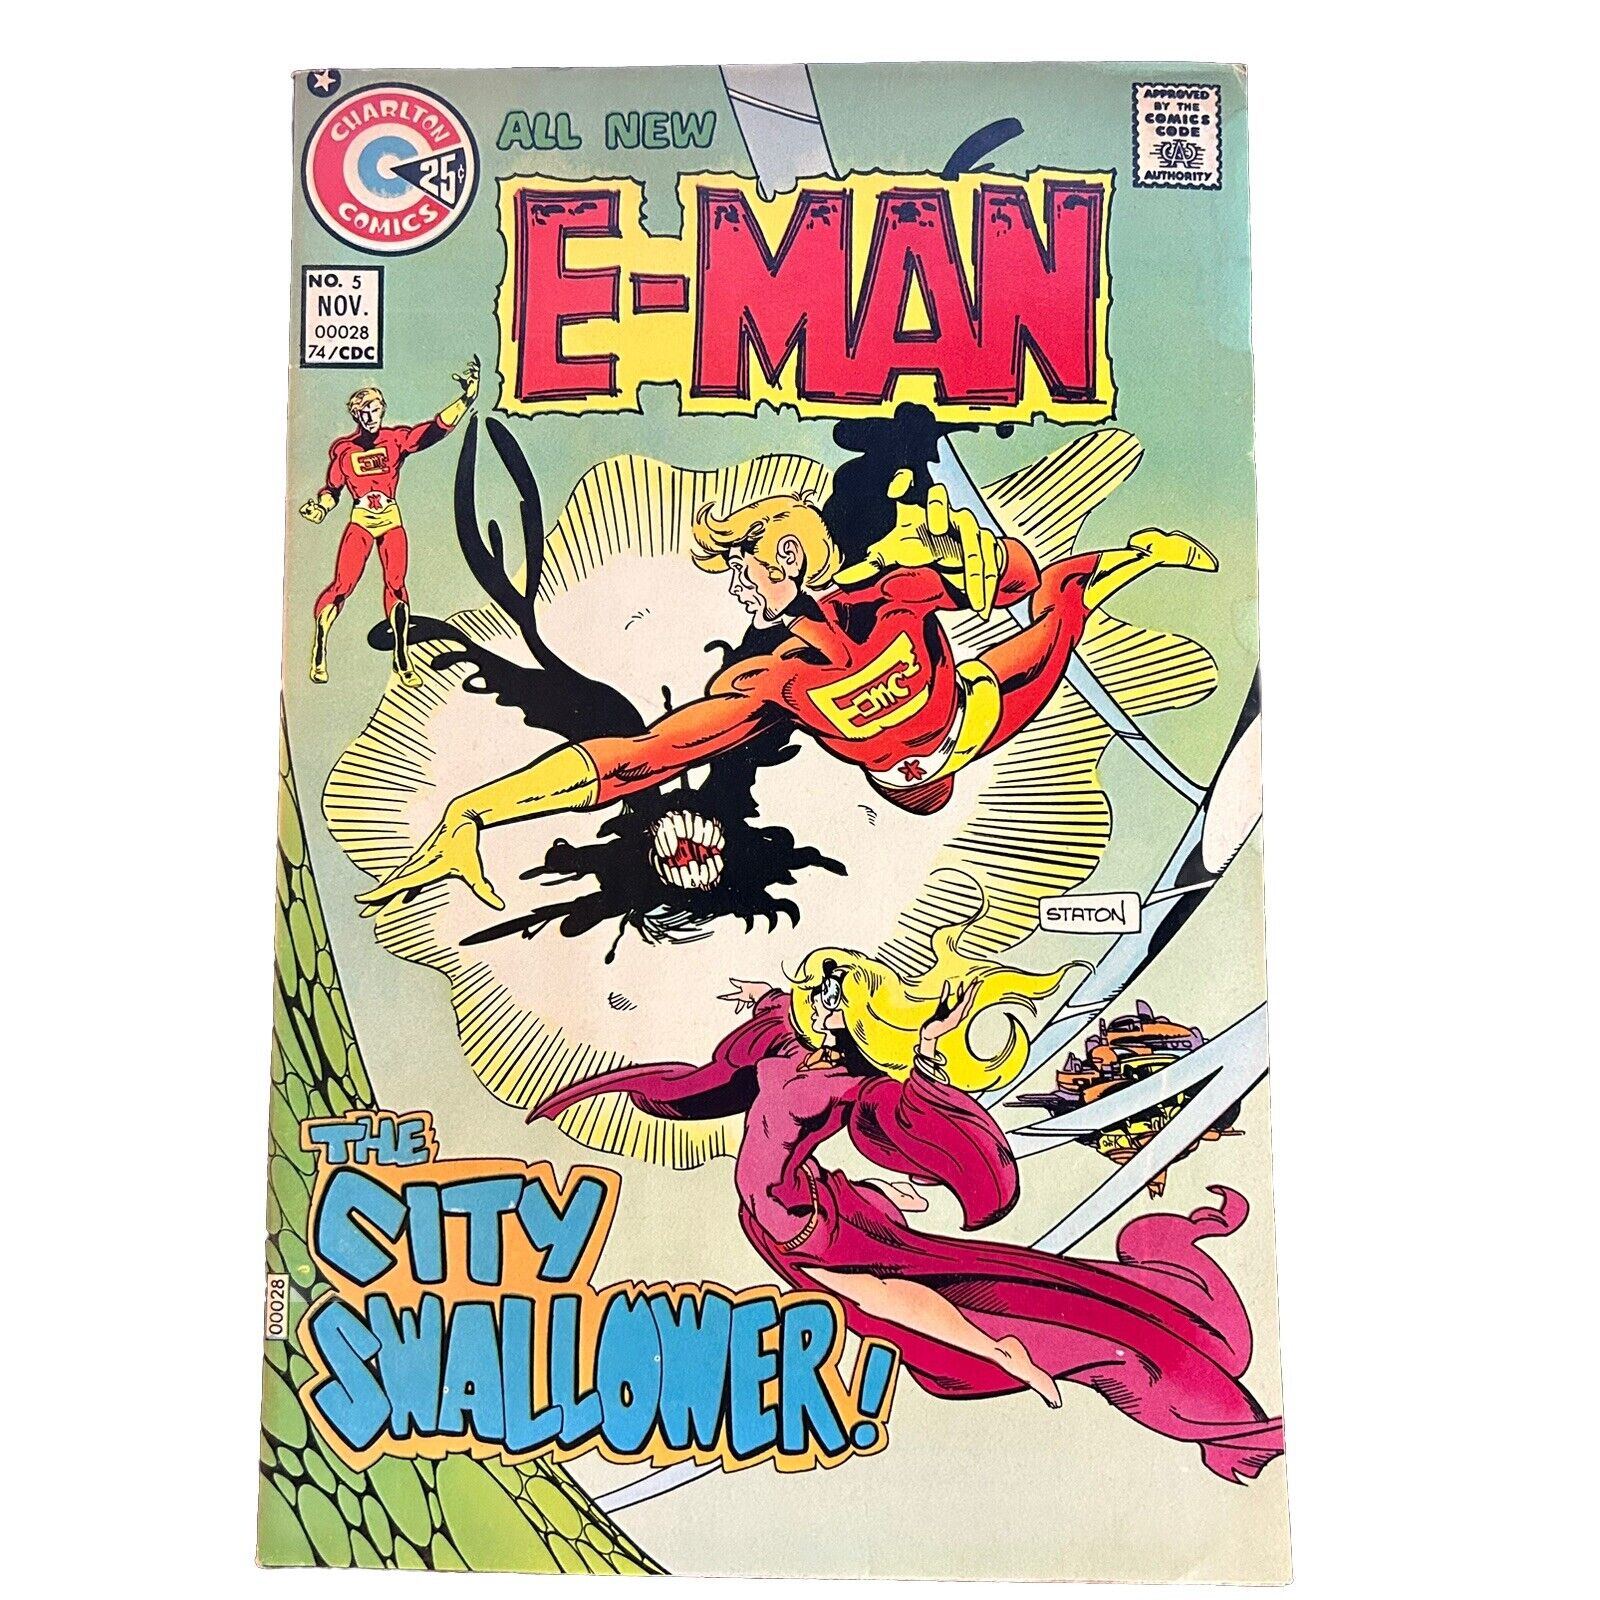 E-MAN No. 5 Nov. 1974 Charlton Comics VF